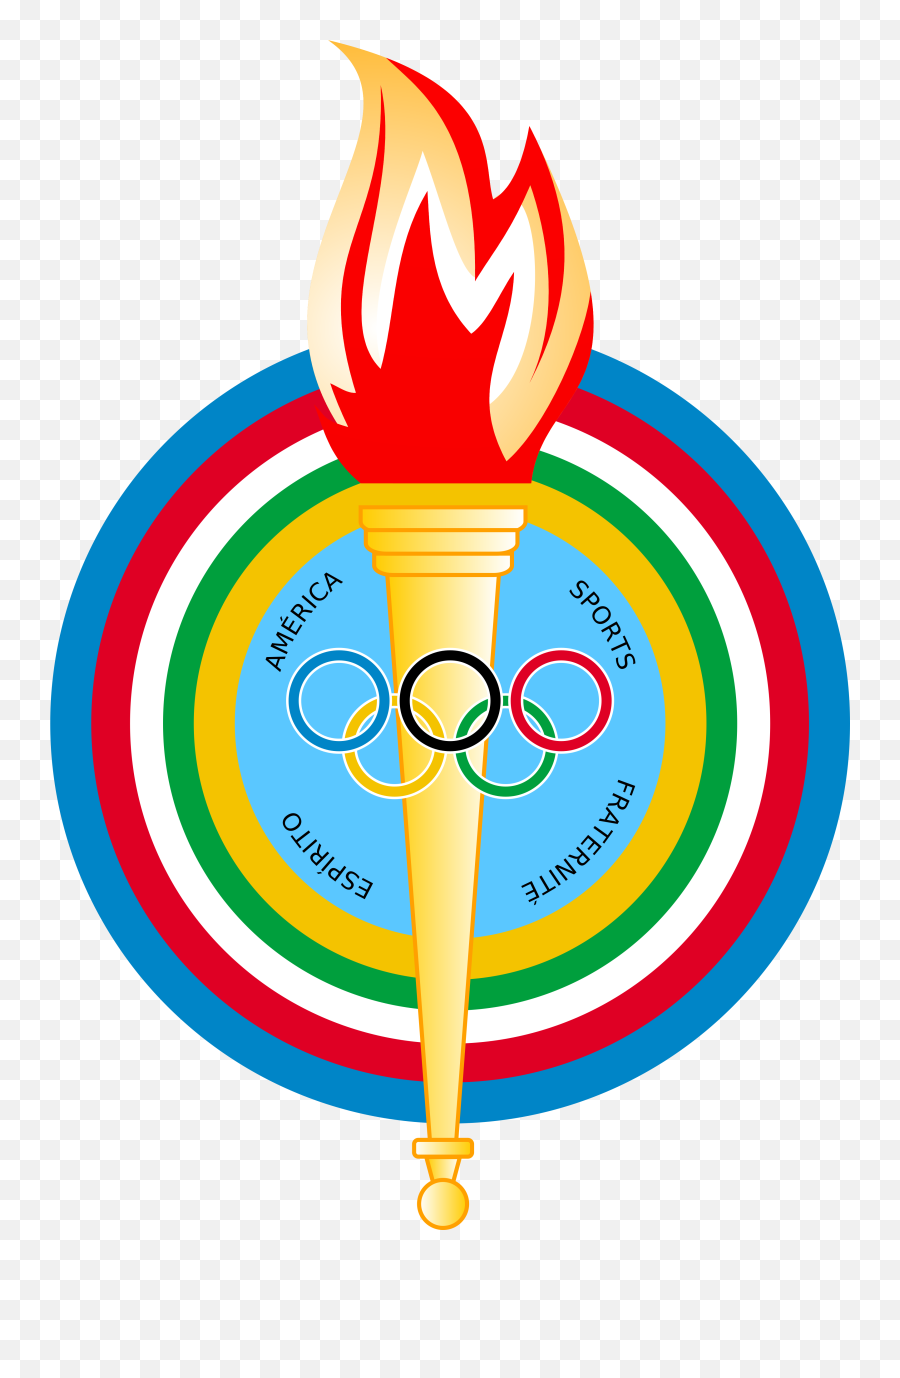 Pan American Games - Pan American Games Emoji,Games Logo